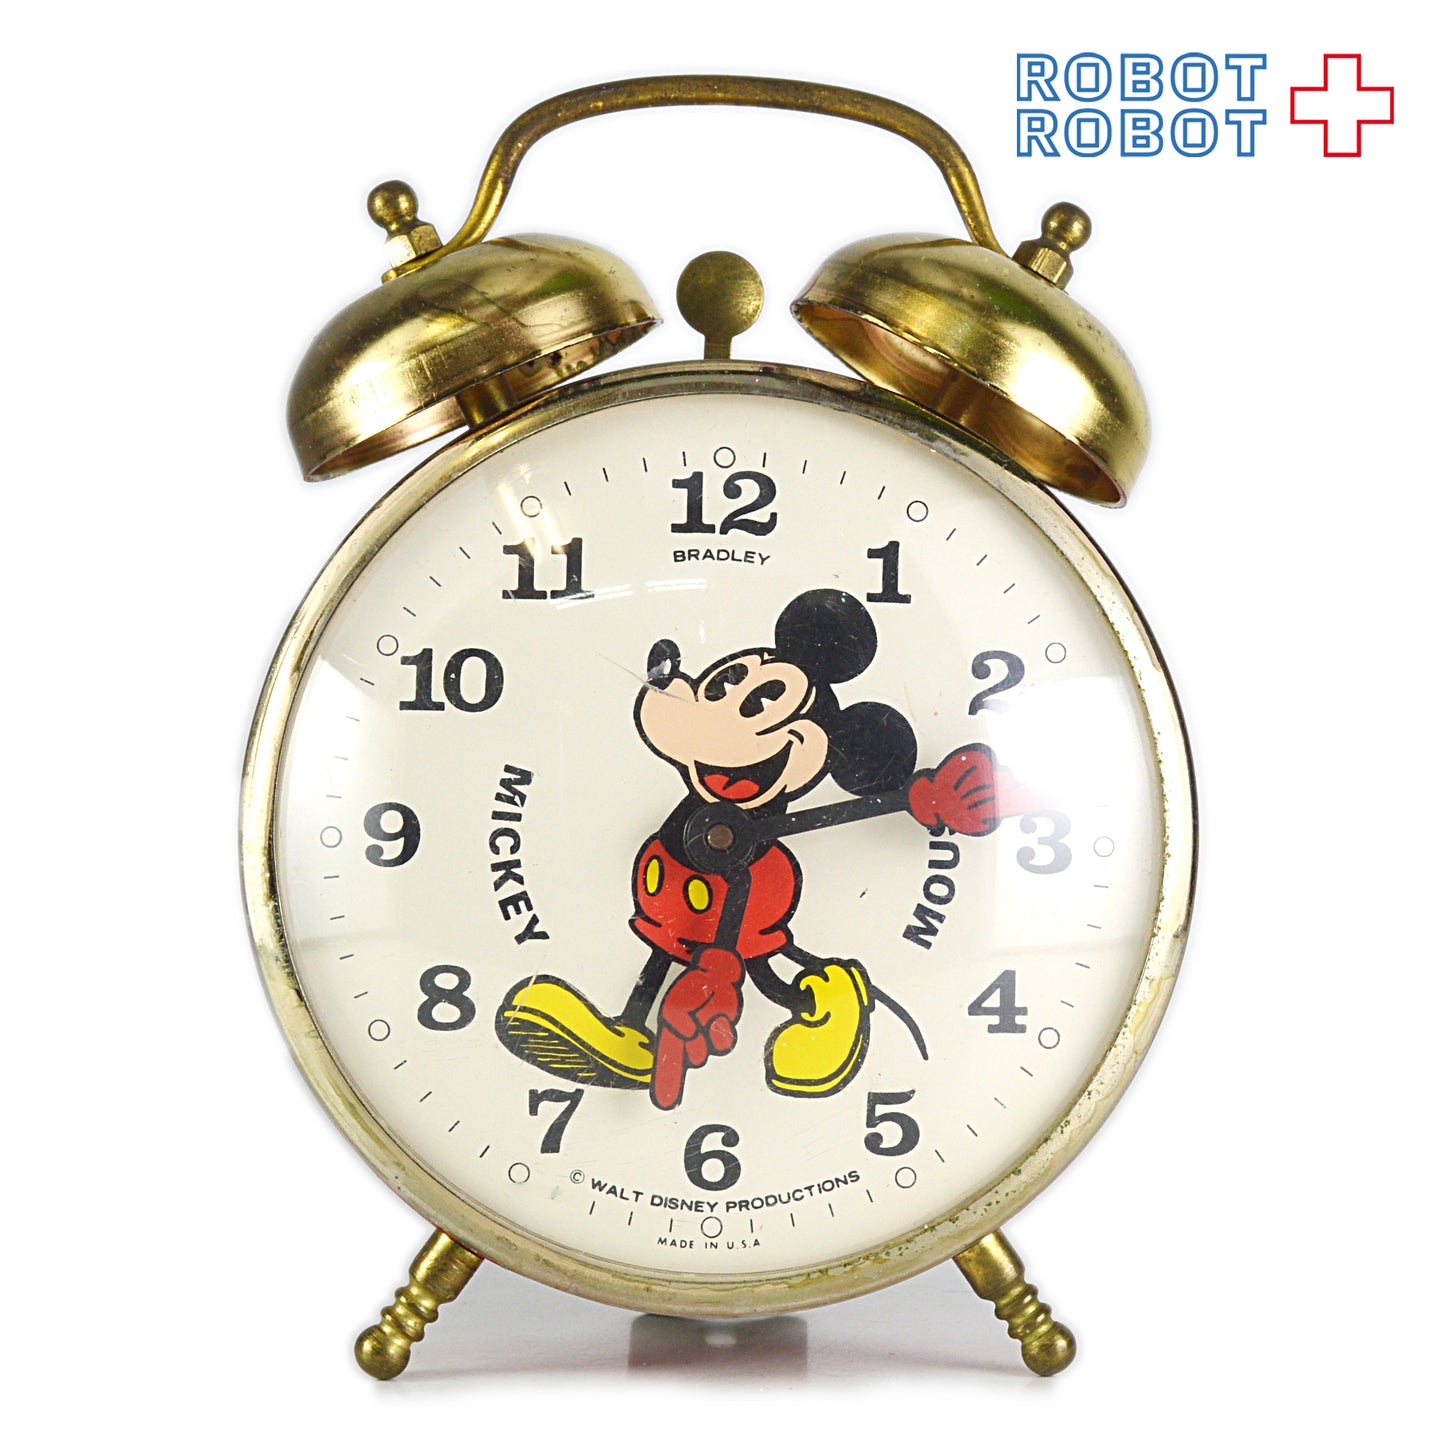 BRADLEY ミッキーマウス 手巻目覚まし時計 スイス製 ビンテージ